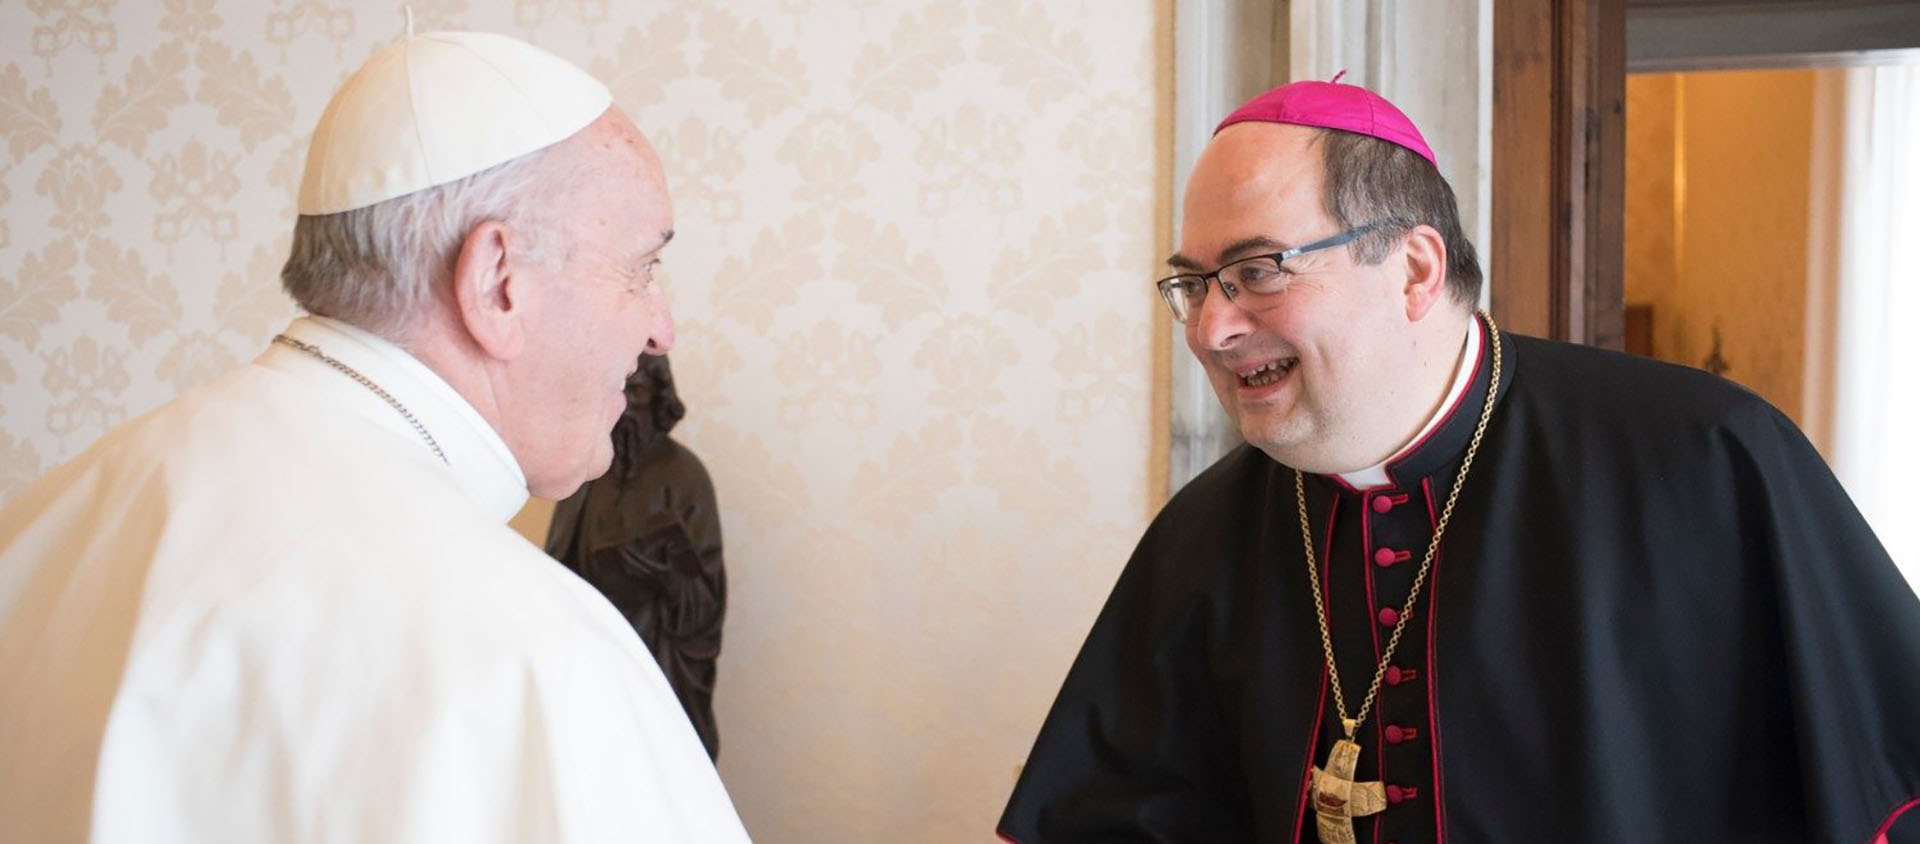 Le pape Rançois a nommé Mgr Giacomo Morandi évêque de Reggio Emilia-Guastalla | © Vatican Media